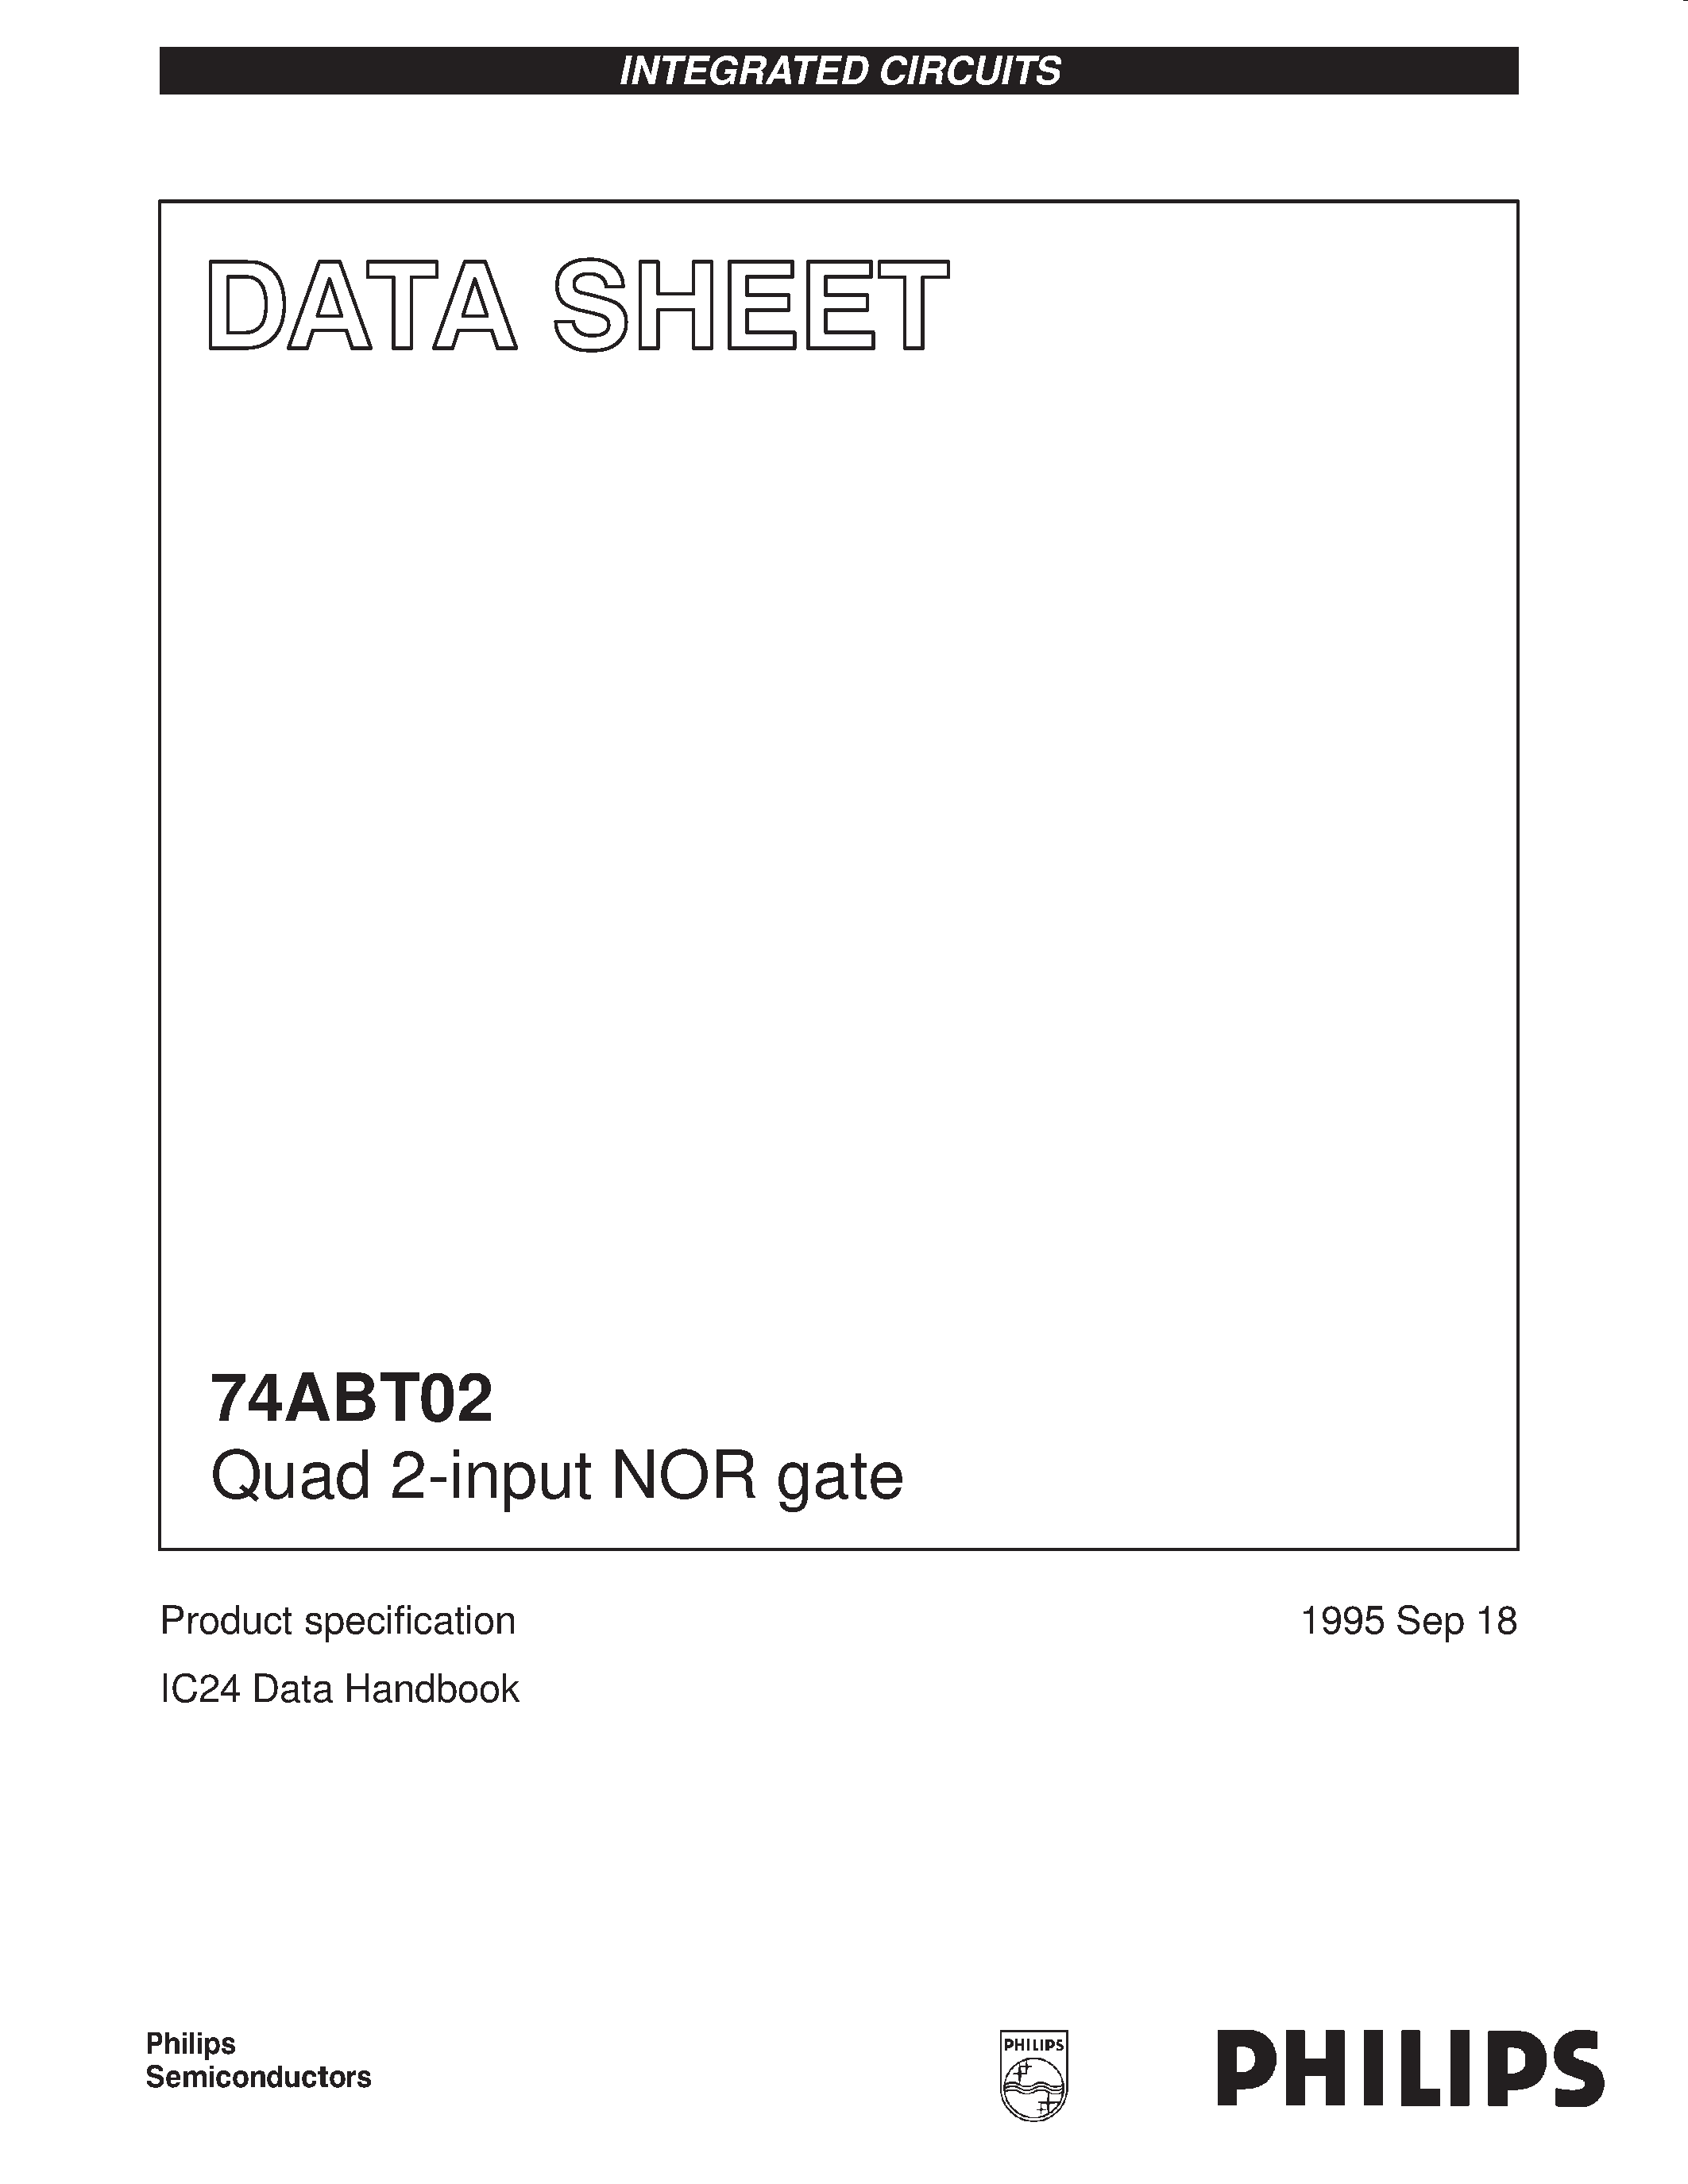 Даташит 74ABT02N - Quad 2-input NOR gate страница 1